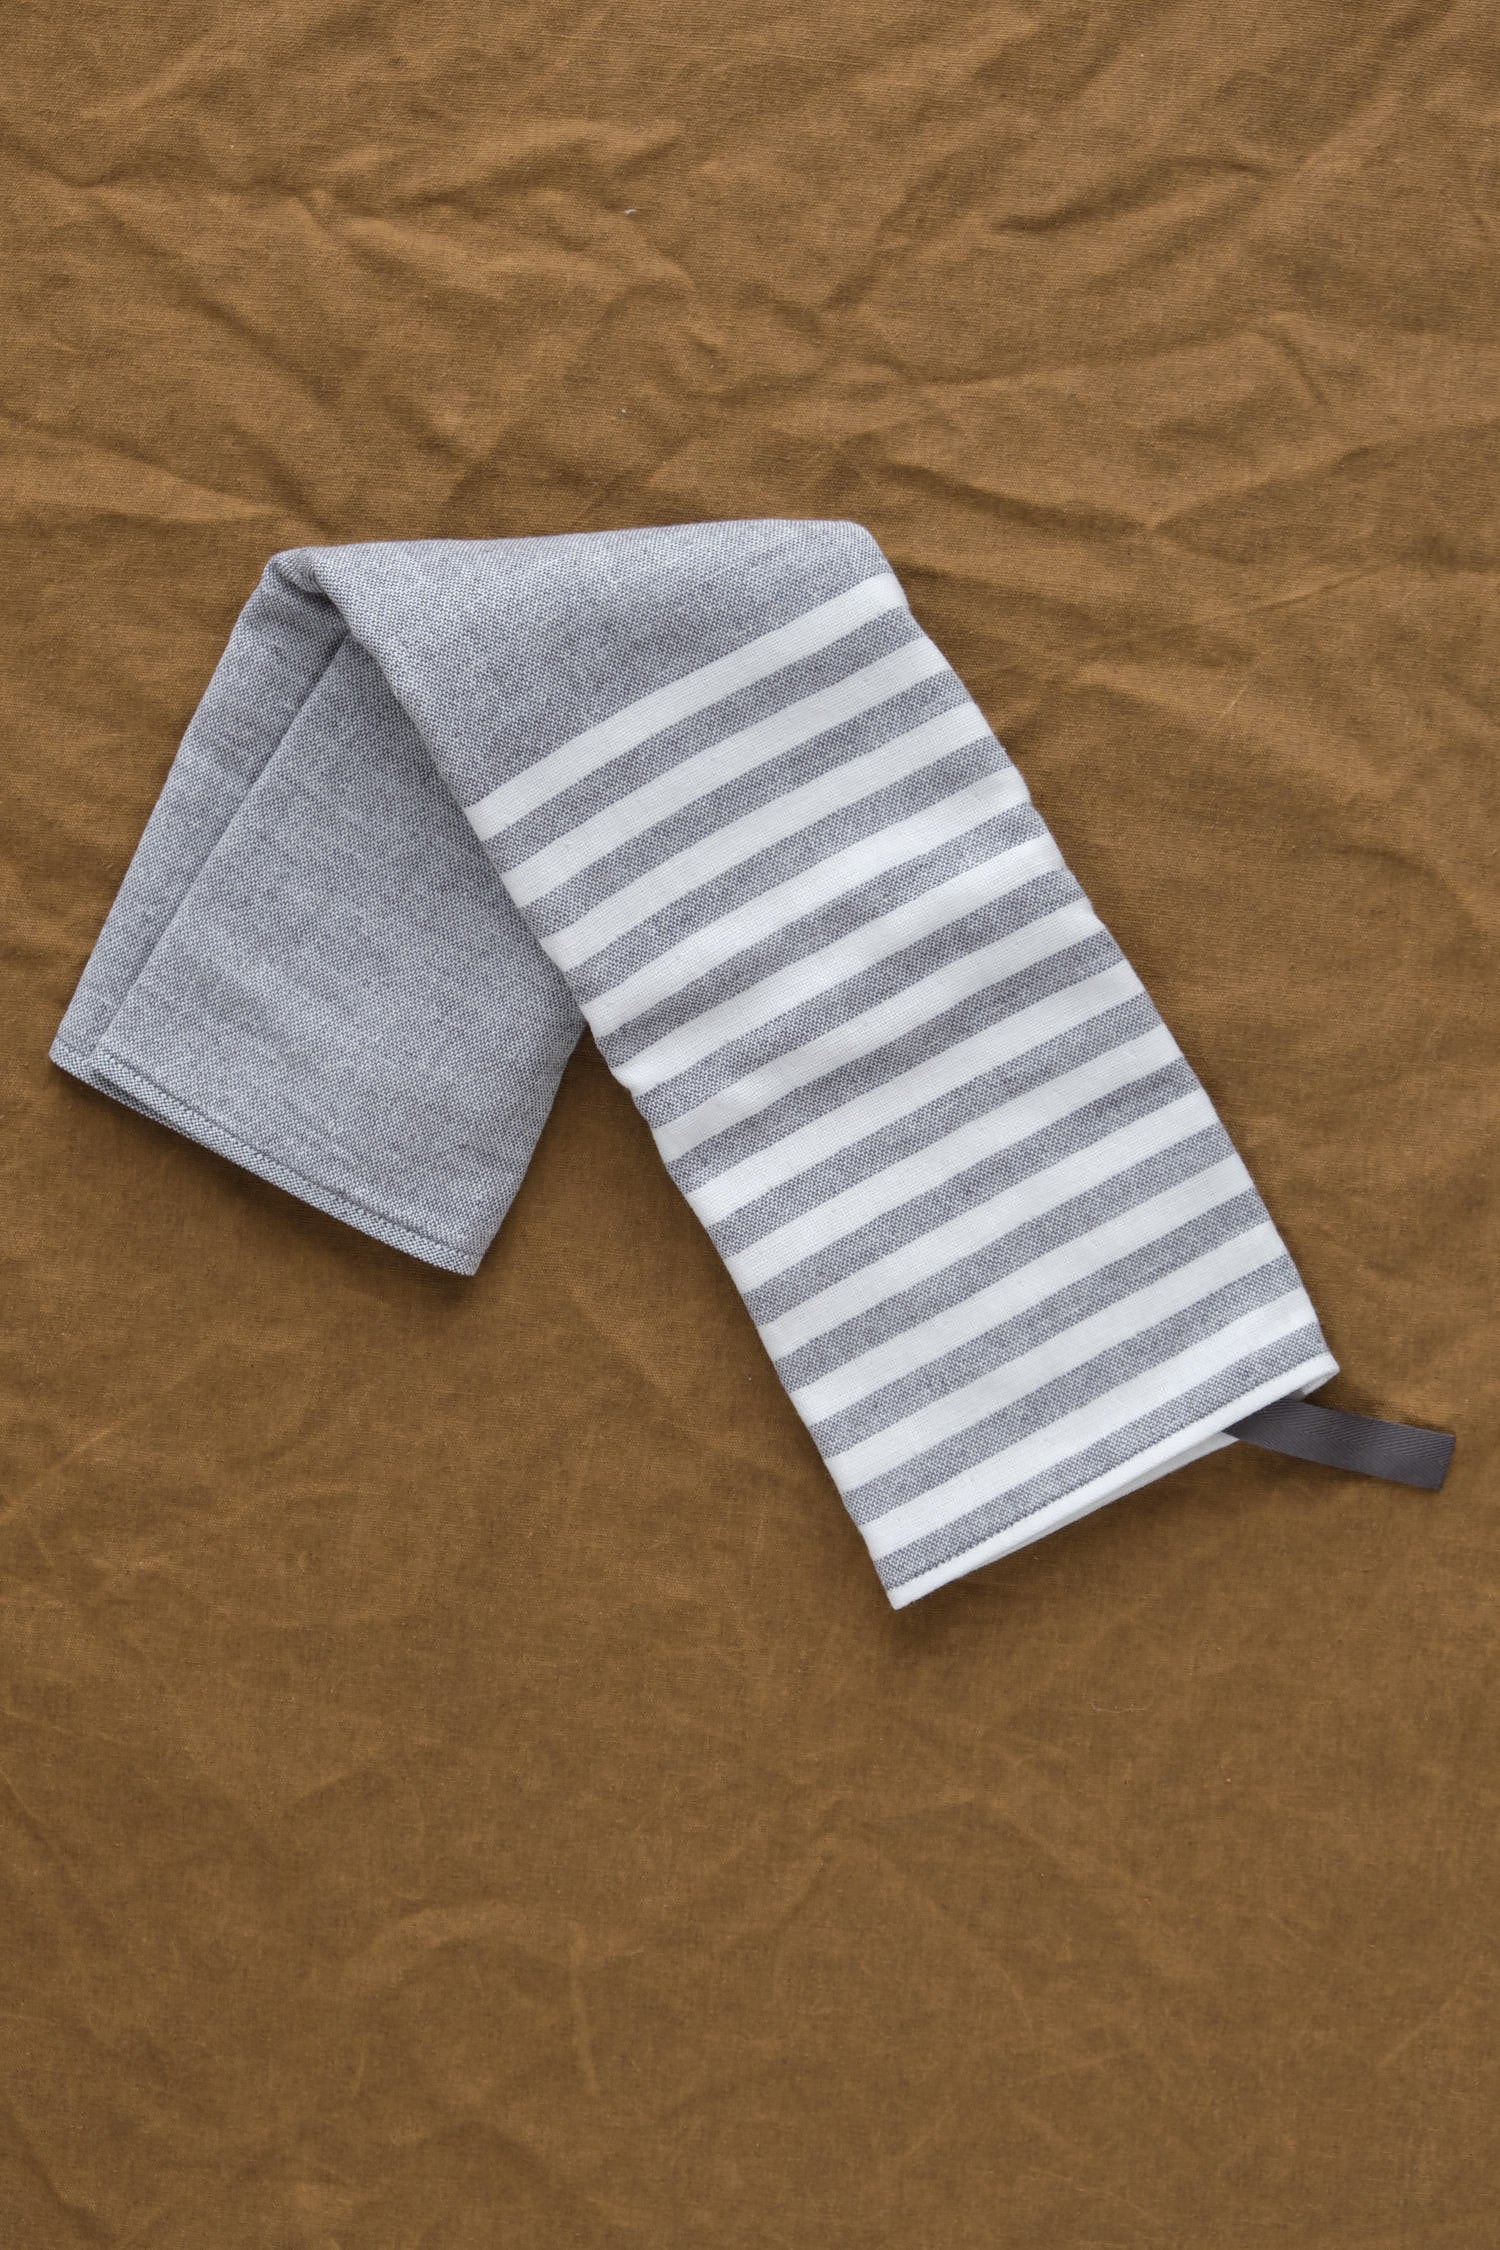 Stripes on Square Towel in Dark Grey